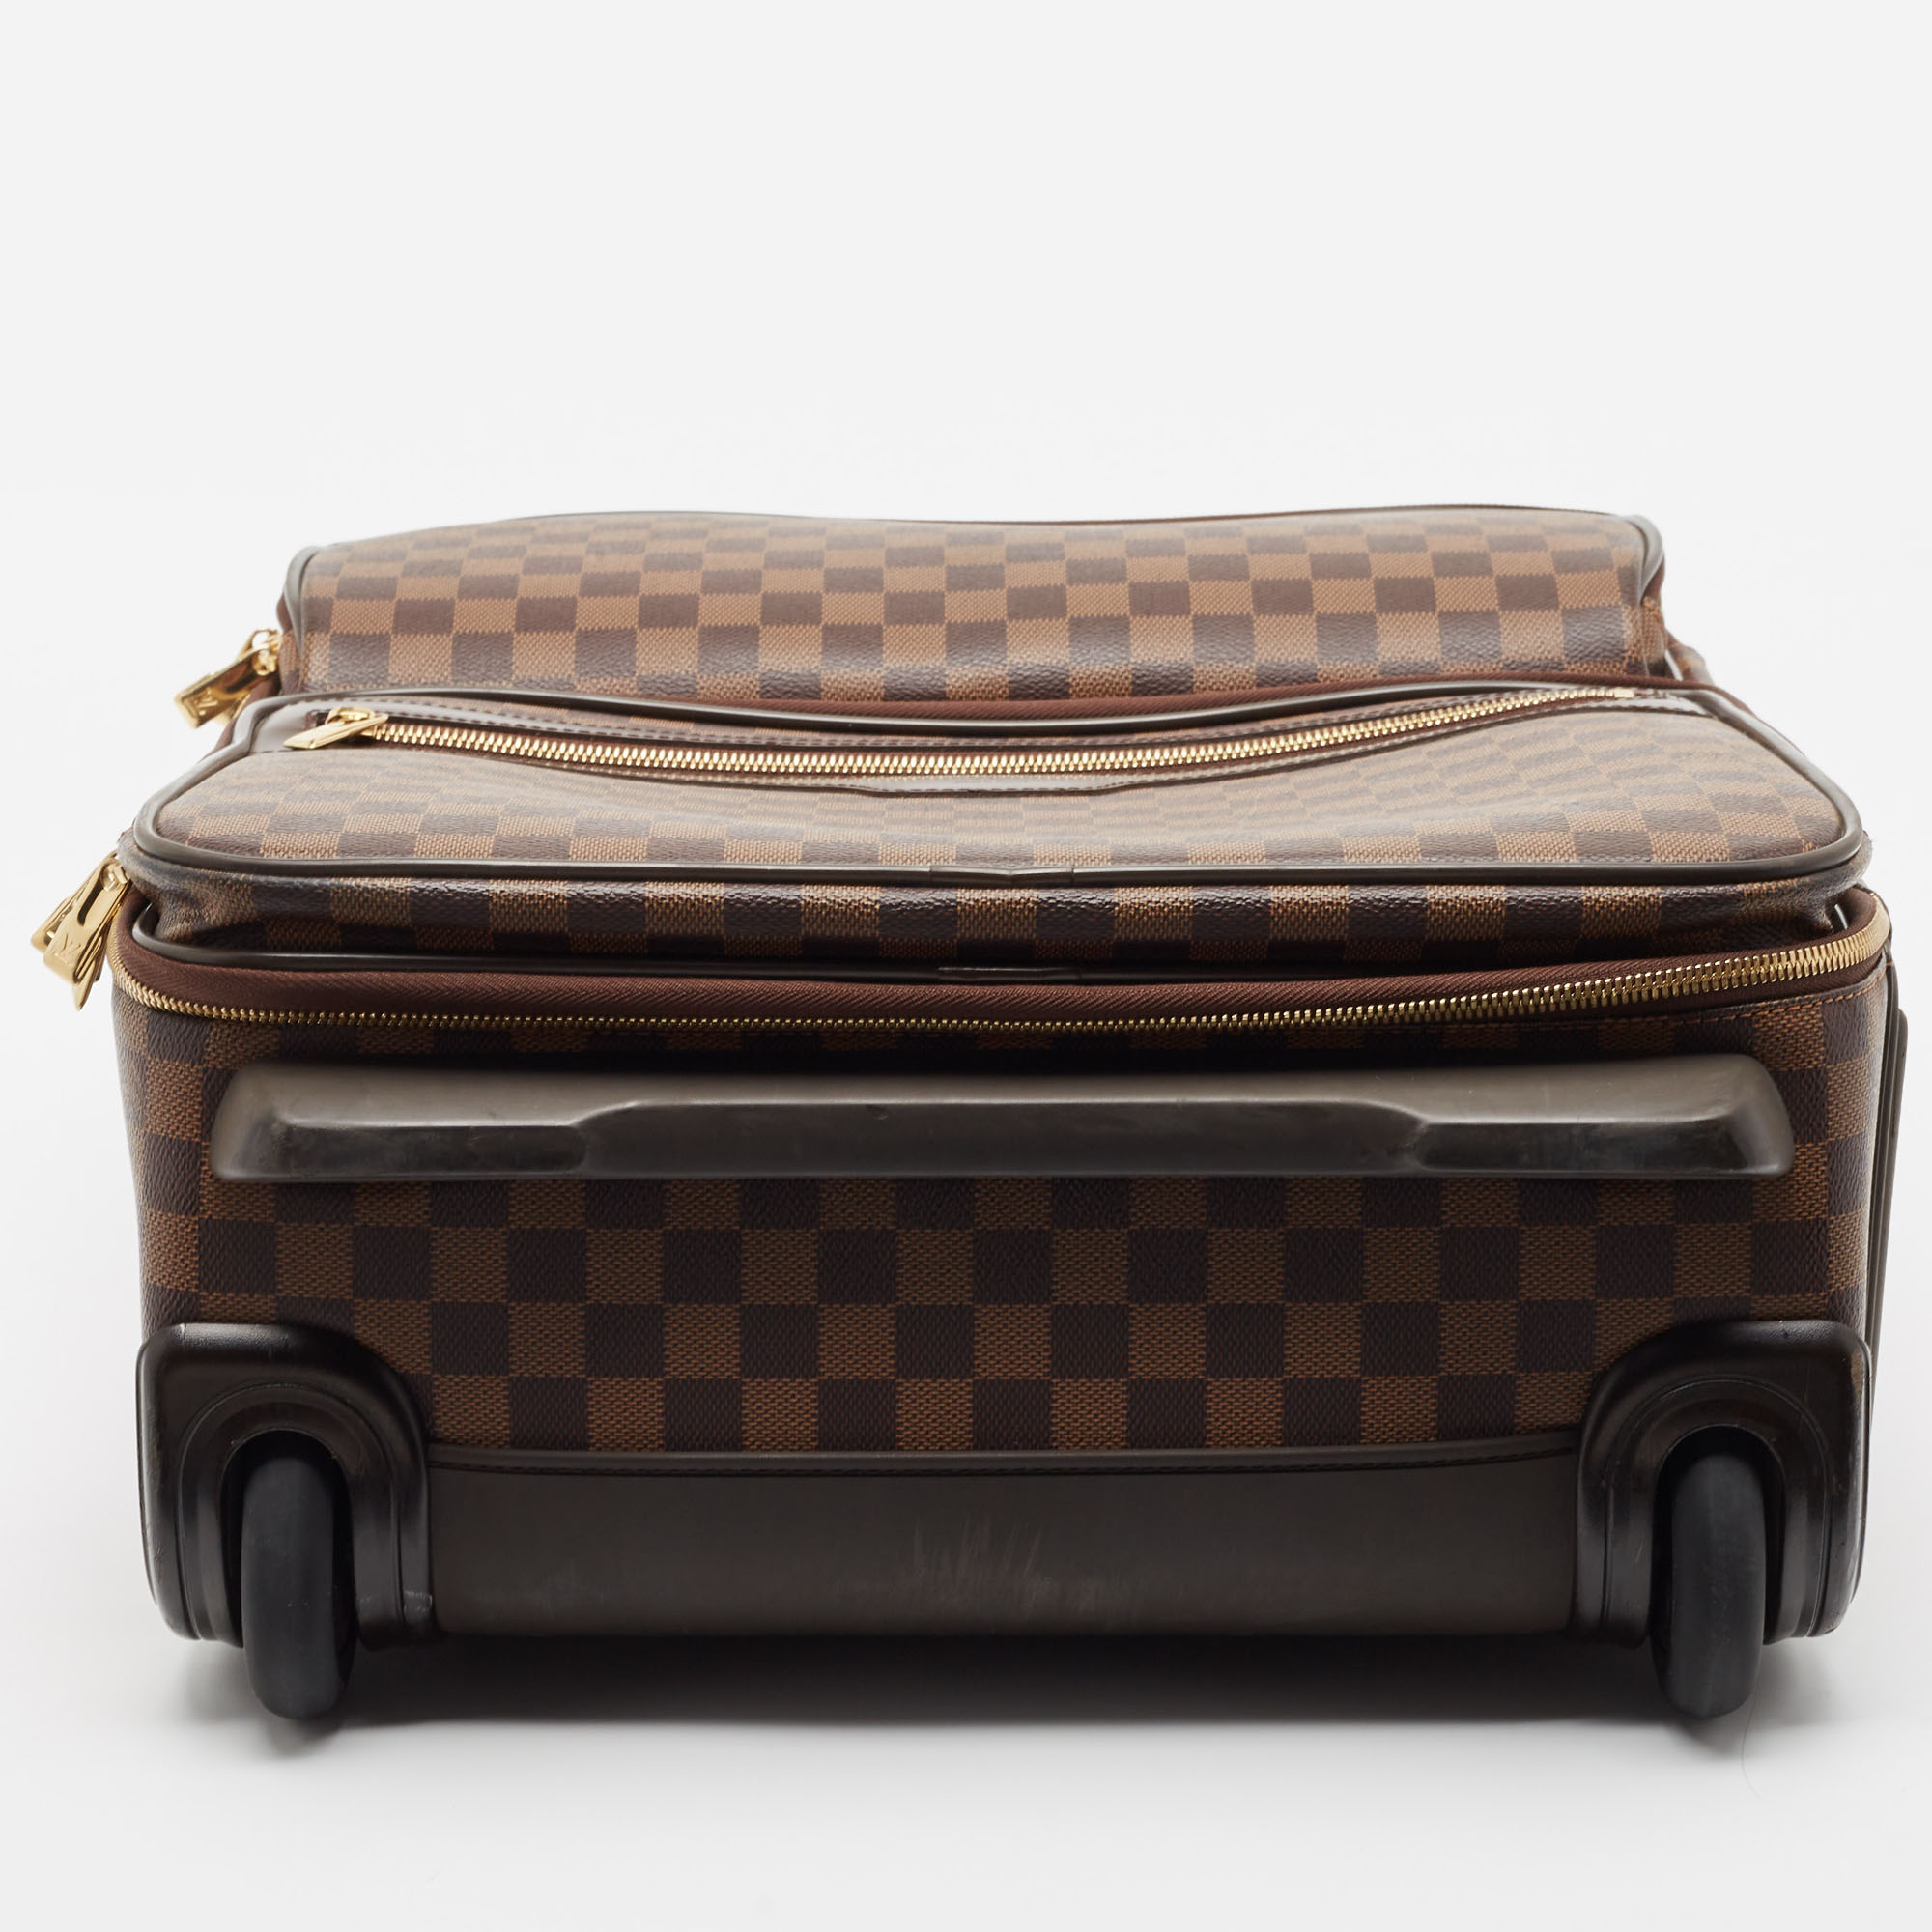 Louis Vuitton Damier Ebene Canvas Pegase Legere Business Suitcase 55